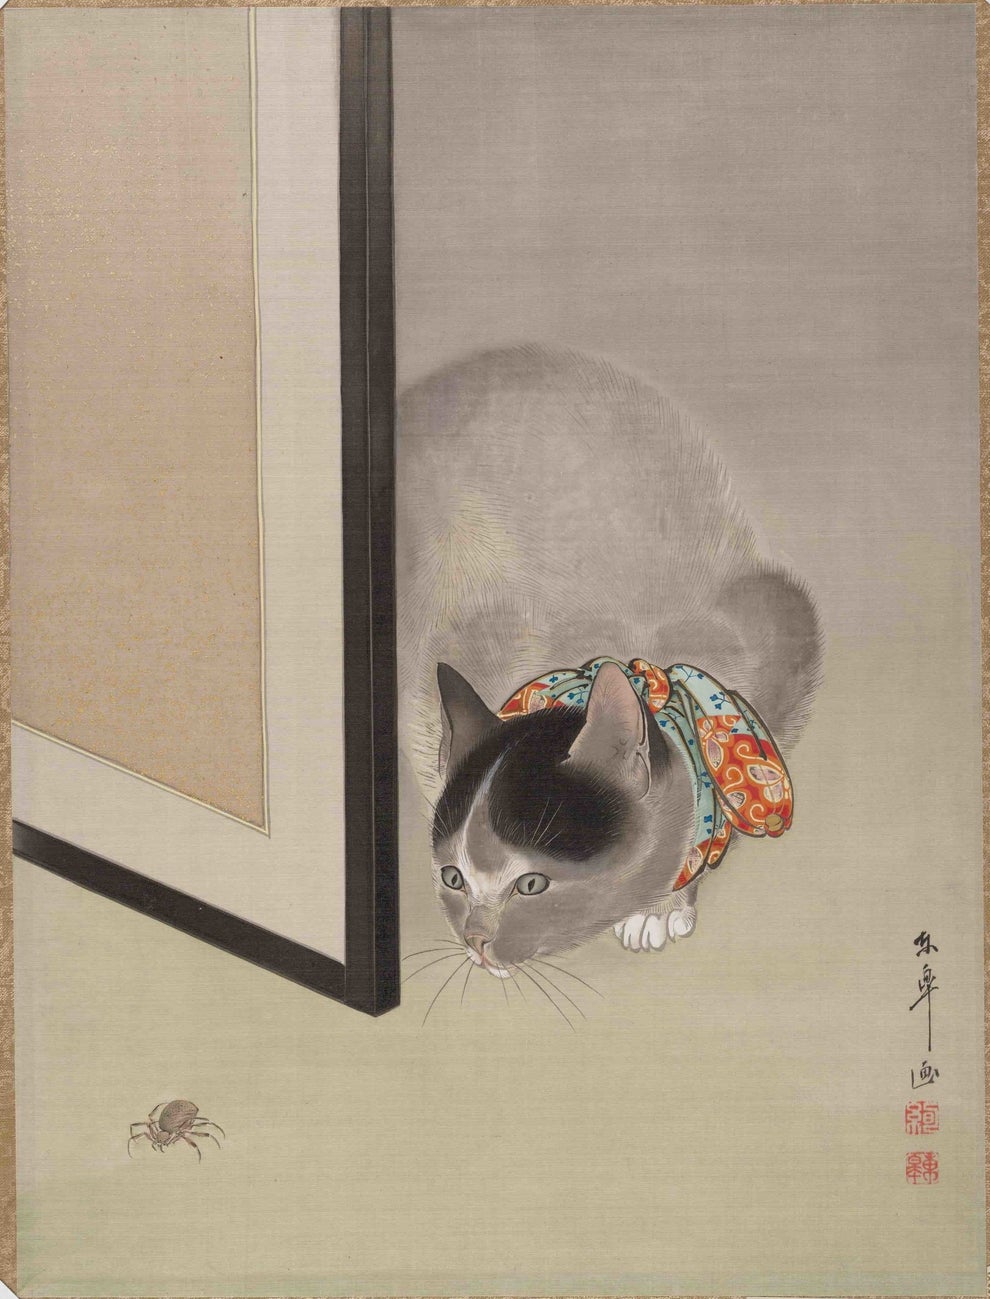 日本人って昔から猫が好きだったんだ とわかる15の証拠画像